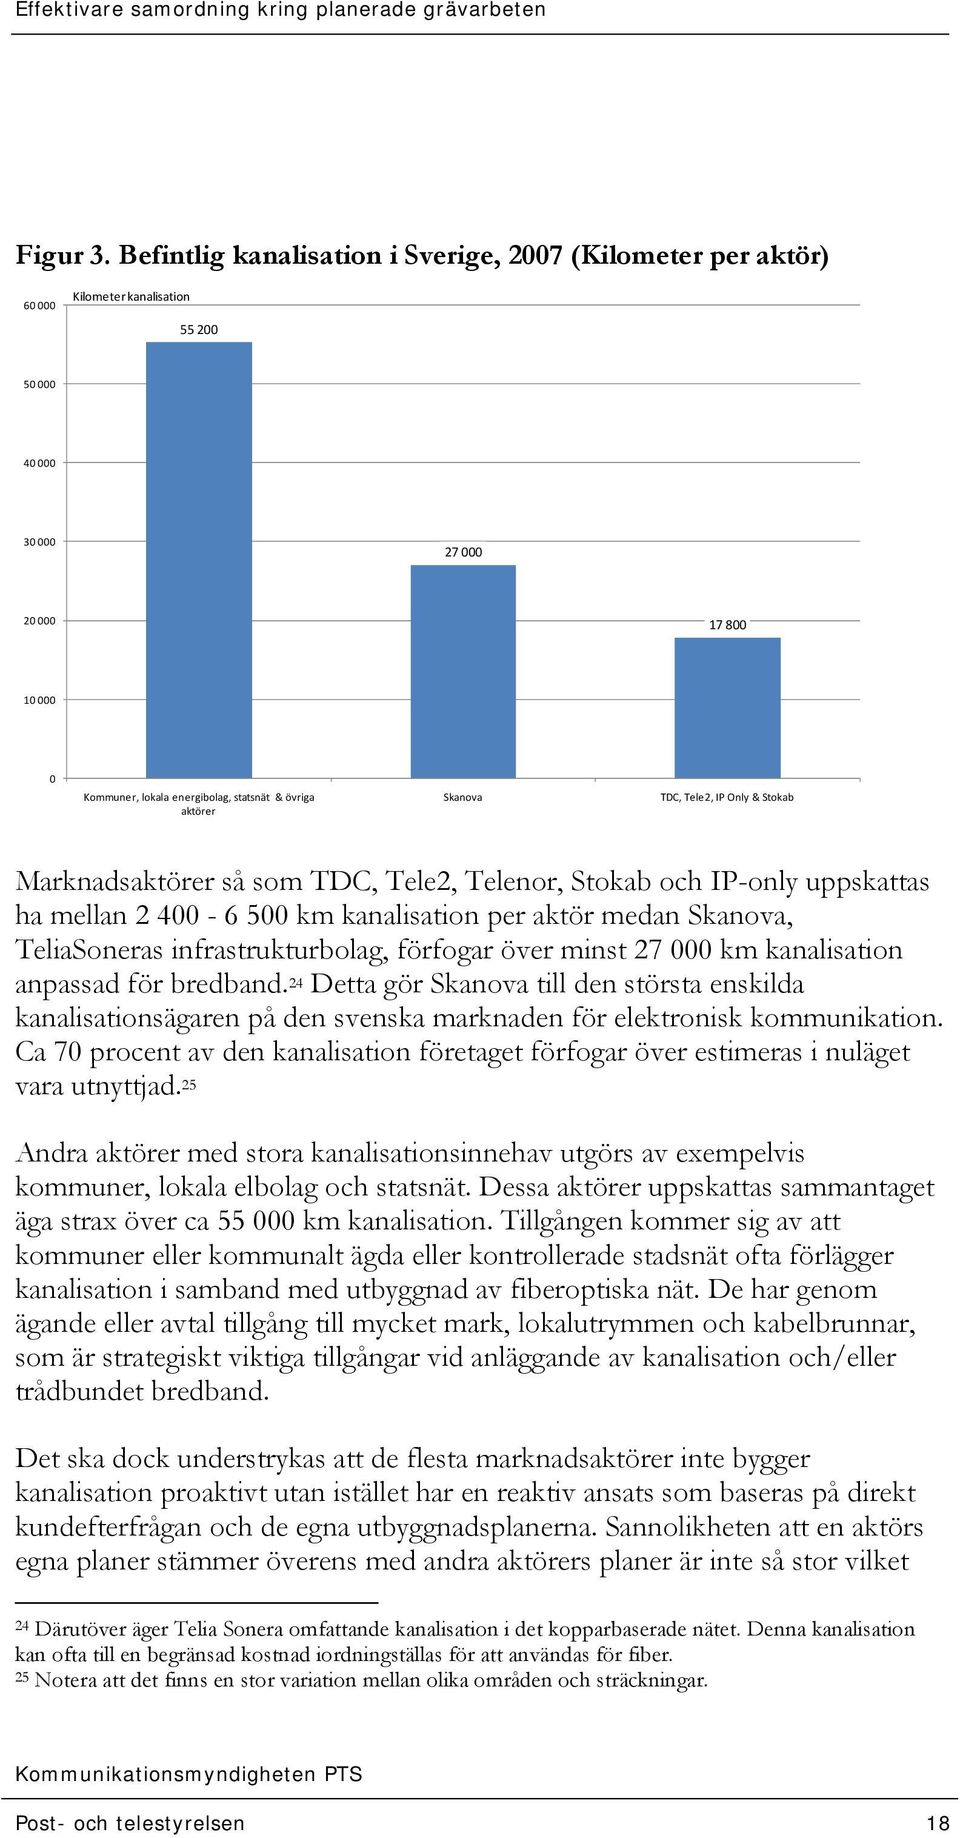 aktörer Skanova TDC, Tele2, IP Only & Stokab Marknadsaktörer så som TDC, Tele2, Telenor, Stokab och IP-only uppskattas ha mellan 2 400-6 500 km kanalisation per aktör medan Skanova, TeliaSoneras